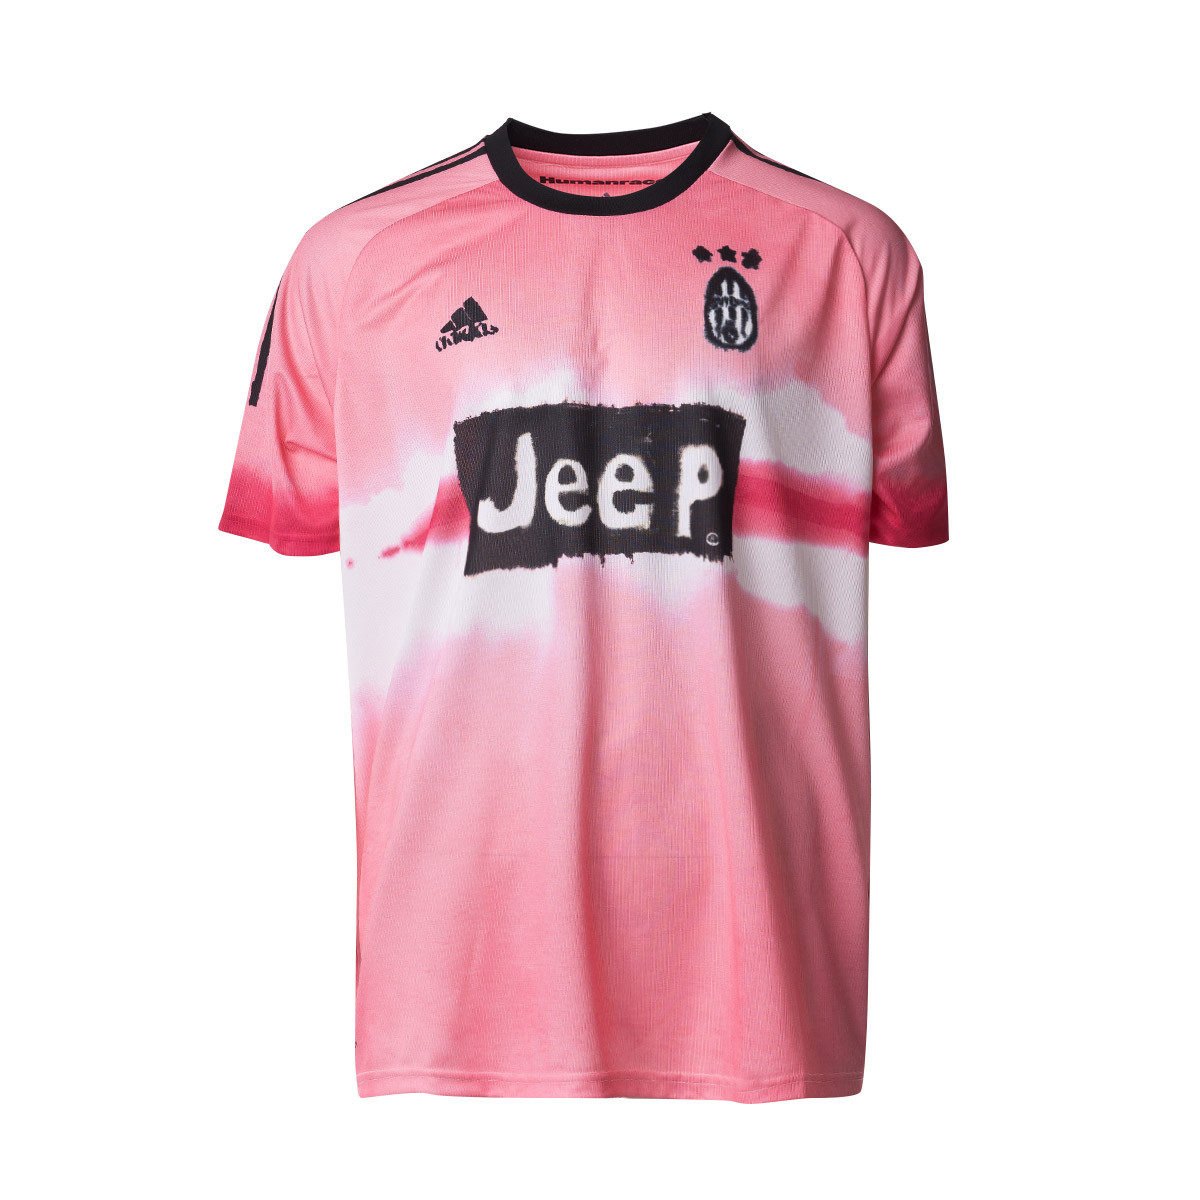 juventus jersey pink and black